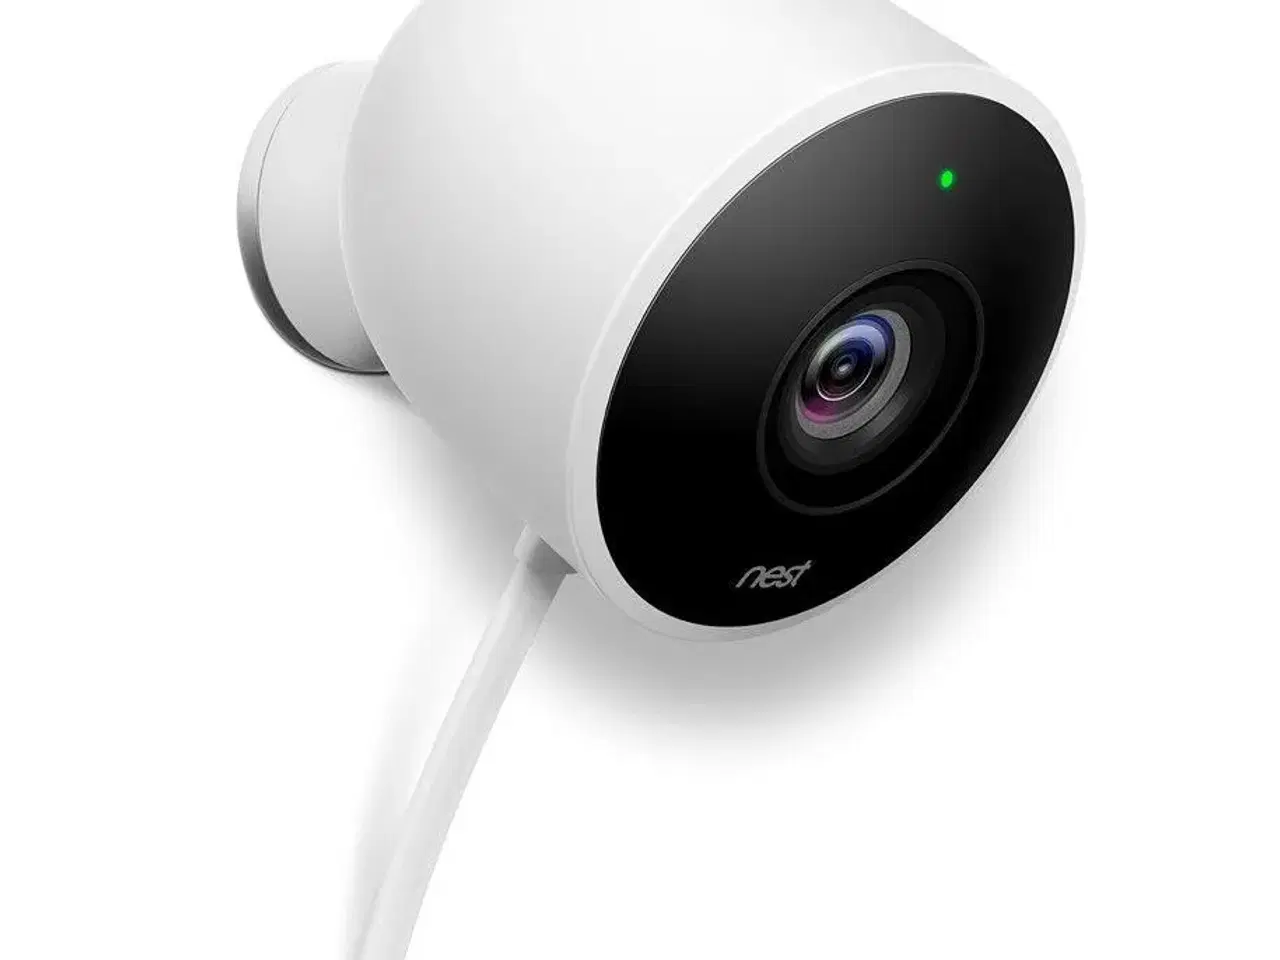 Billede 3 - Google Nest Kamera købes 